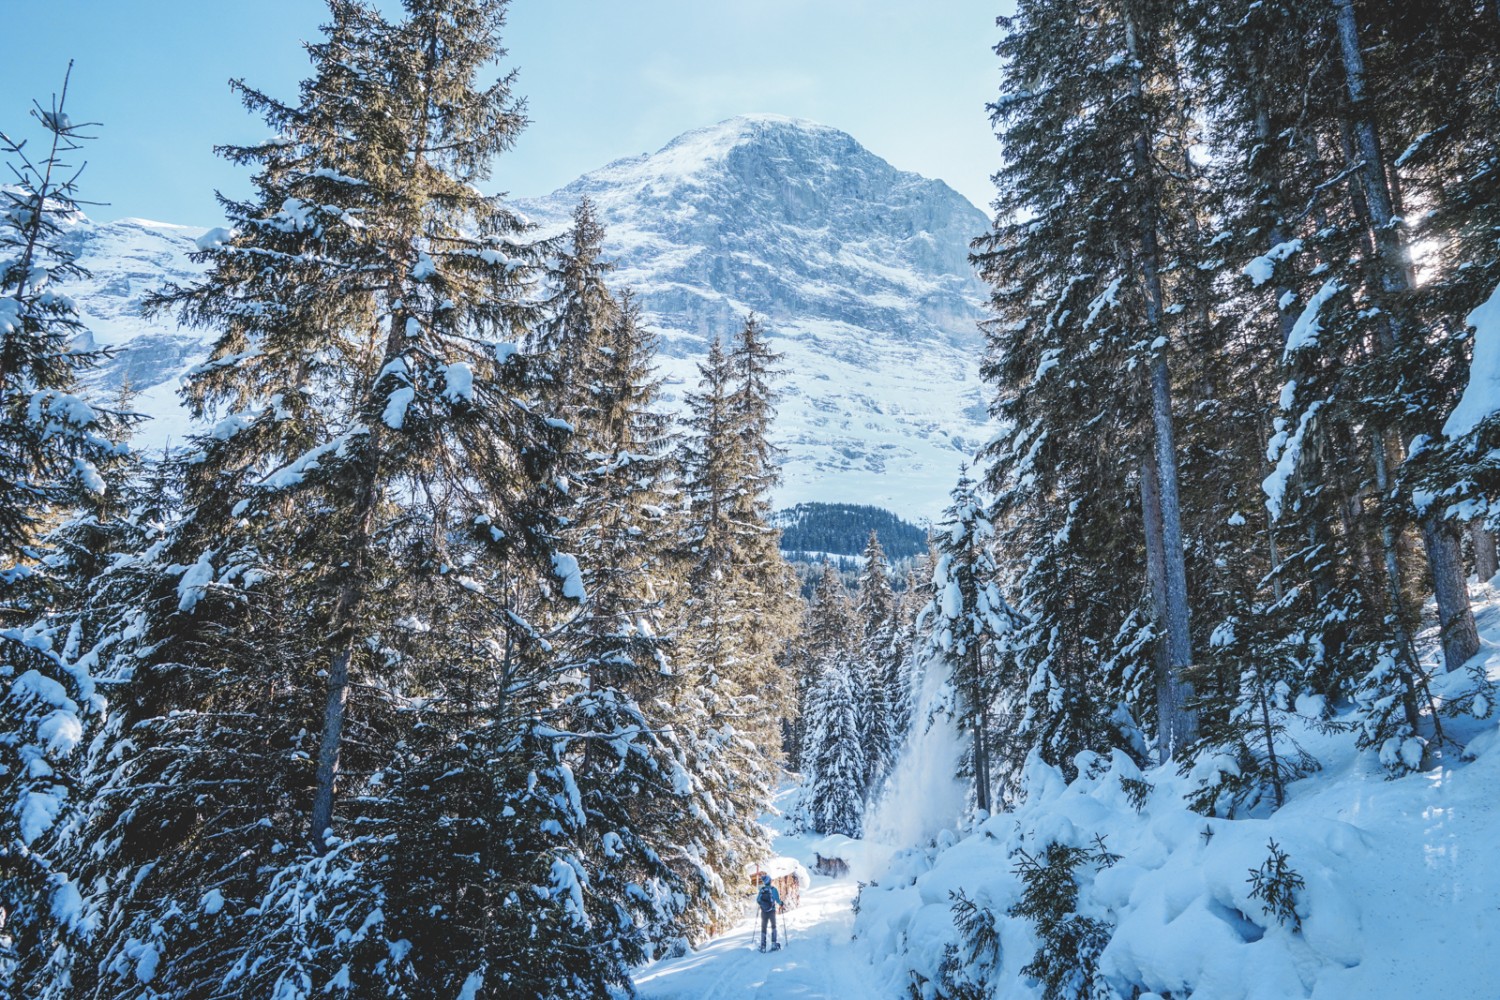 On aperçoit de nouveau l’Eiger à travers une trouée dans la forêt. Photo: Fredy Joss